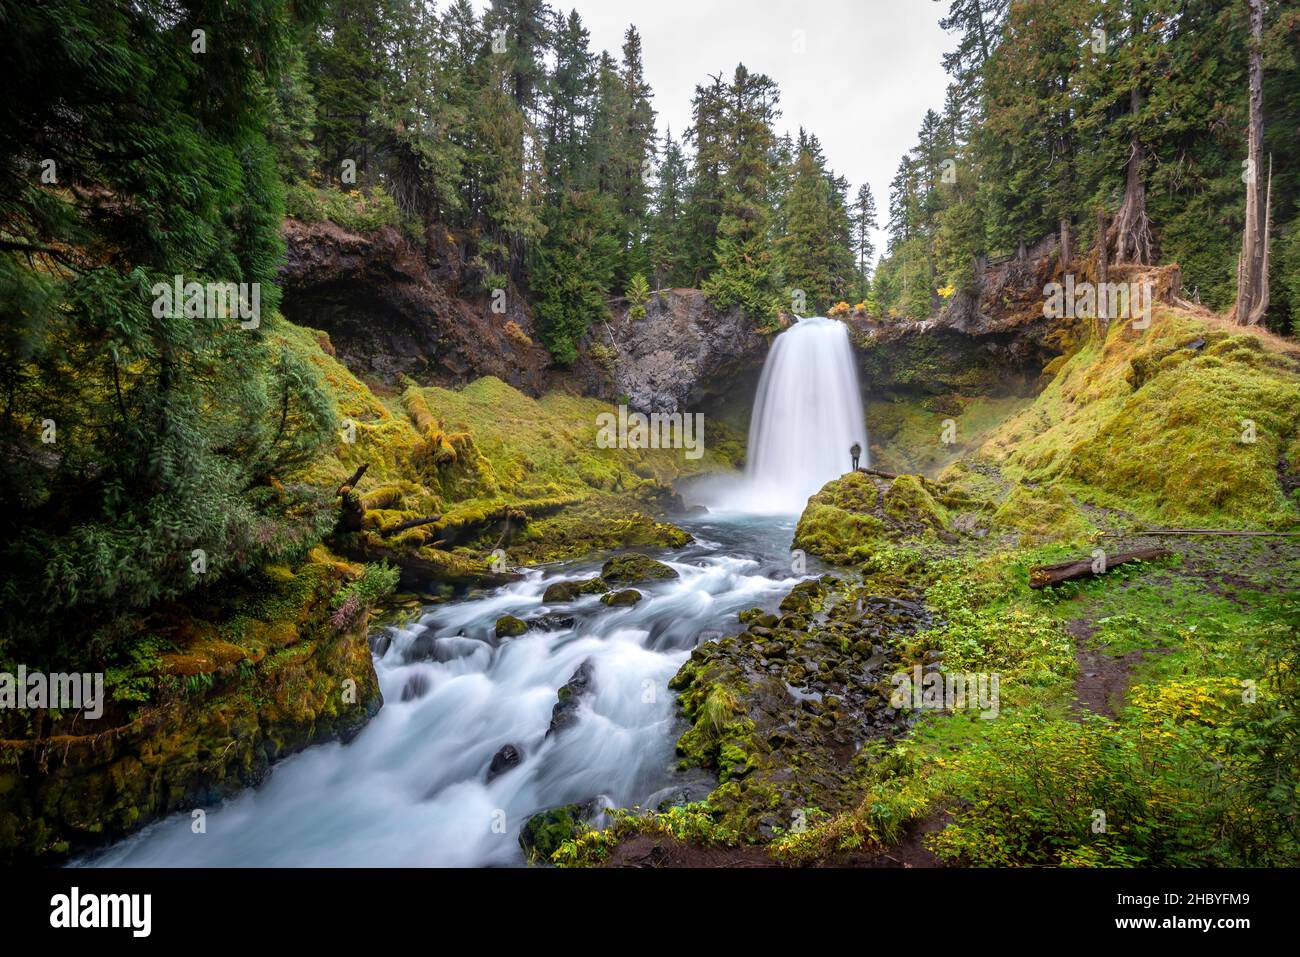 Jeune homme en face de la cascade, exposition longue, chutes de Sahalie, forêt avec des mousses, Oregon,ÉTATS-UNIS Banque D'Images